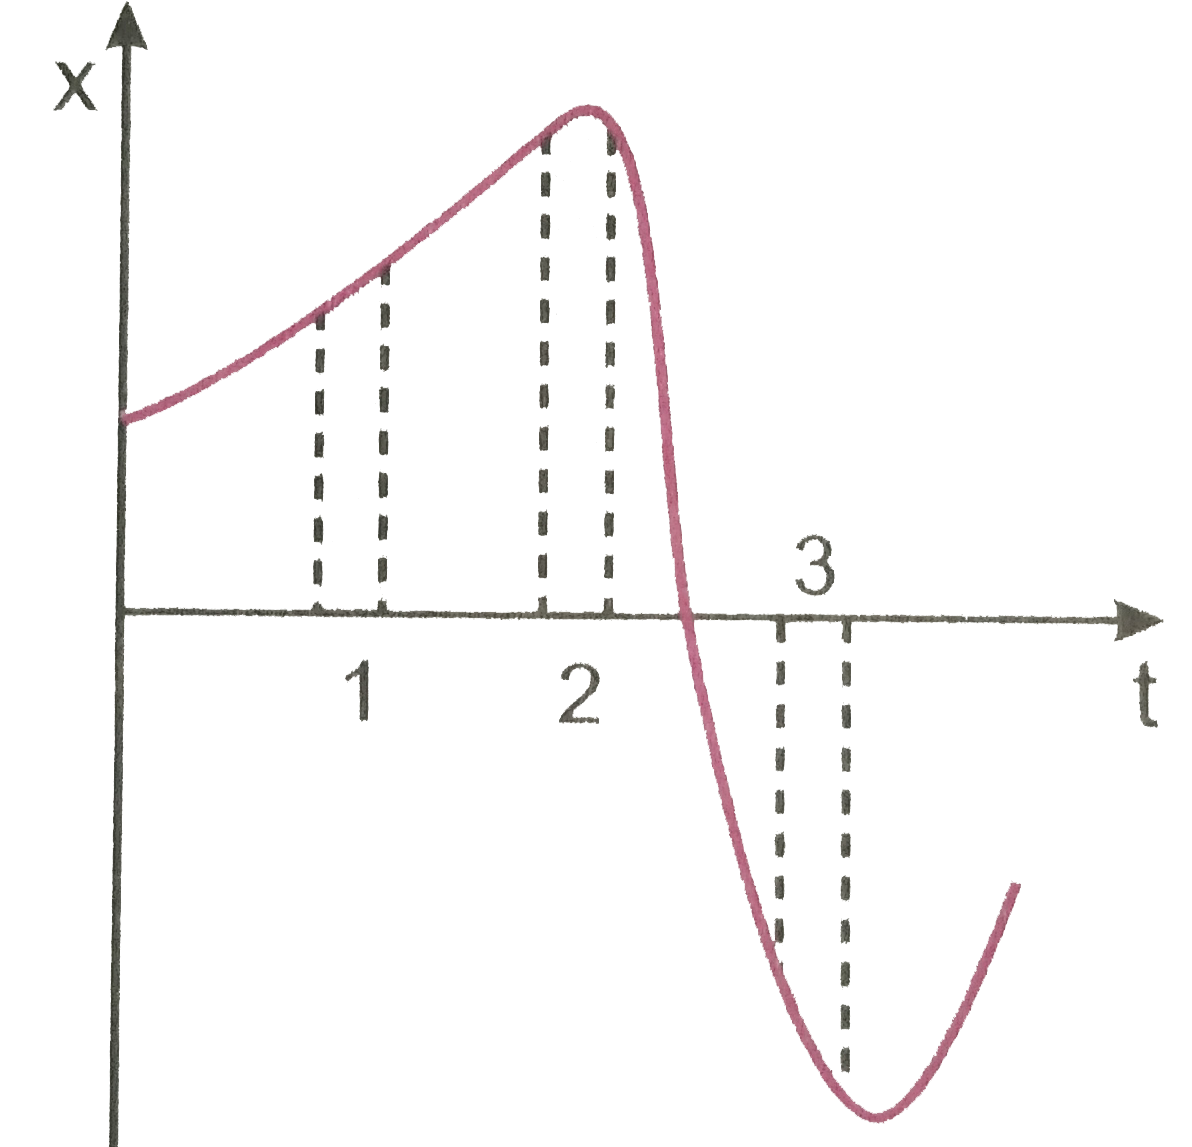 चित्र 3.55 किसी कण की एकविमीय गति का x-t ग्राफ दर्शाता है इसमें तीन समान अंतराल दिखाए गए है किस अंतराल में औसत चाल अधिकतम है और किसमें न्यूनतम है ? प्रत्येक अंतराल के लिए औसत वेग का चिन्ह बताइए ।